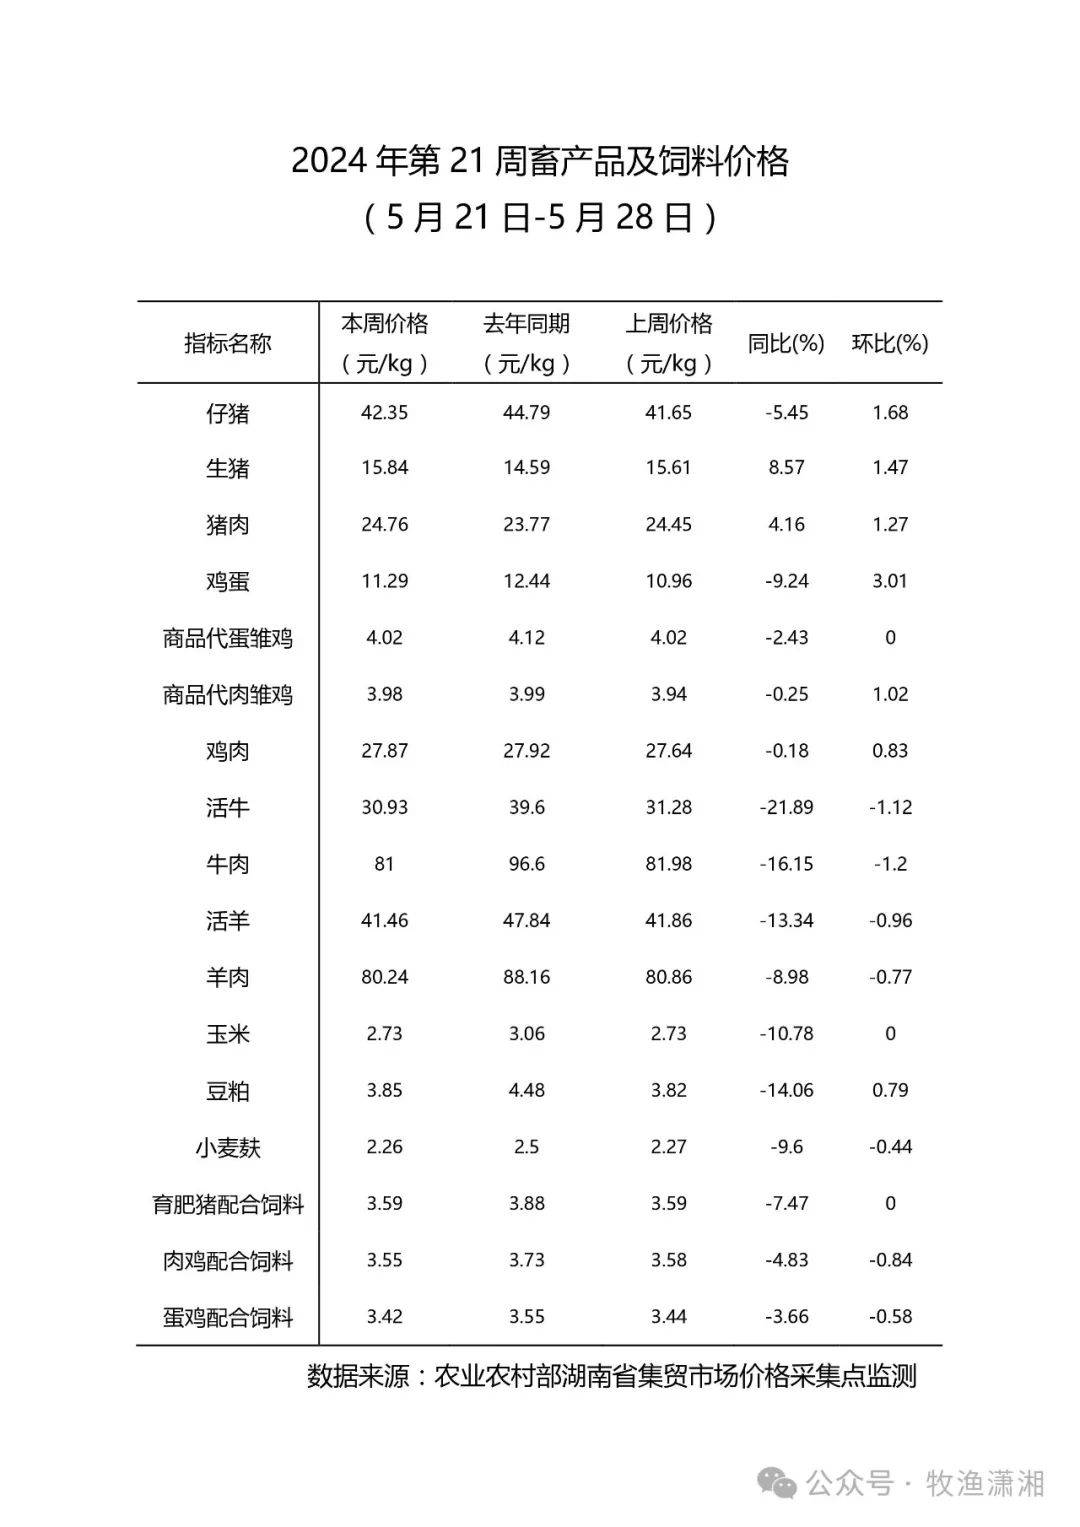 【省内消息】2024年第21周畜产品及饲料价格(5月21日